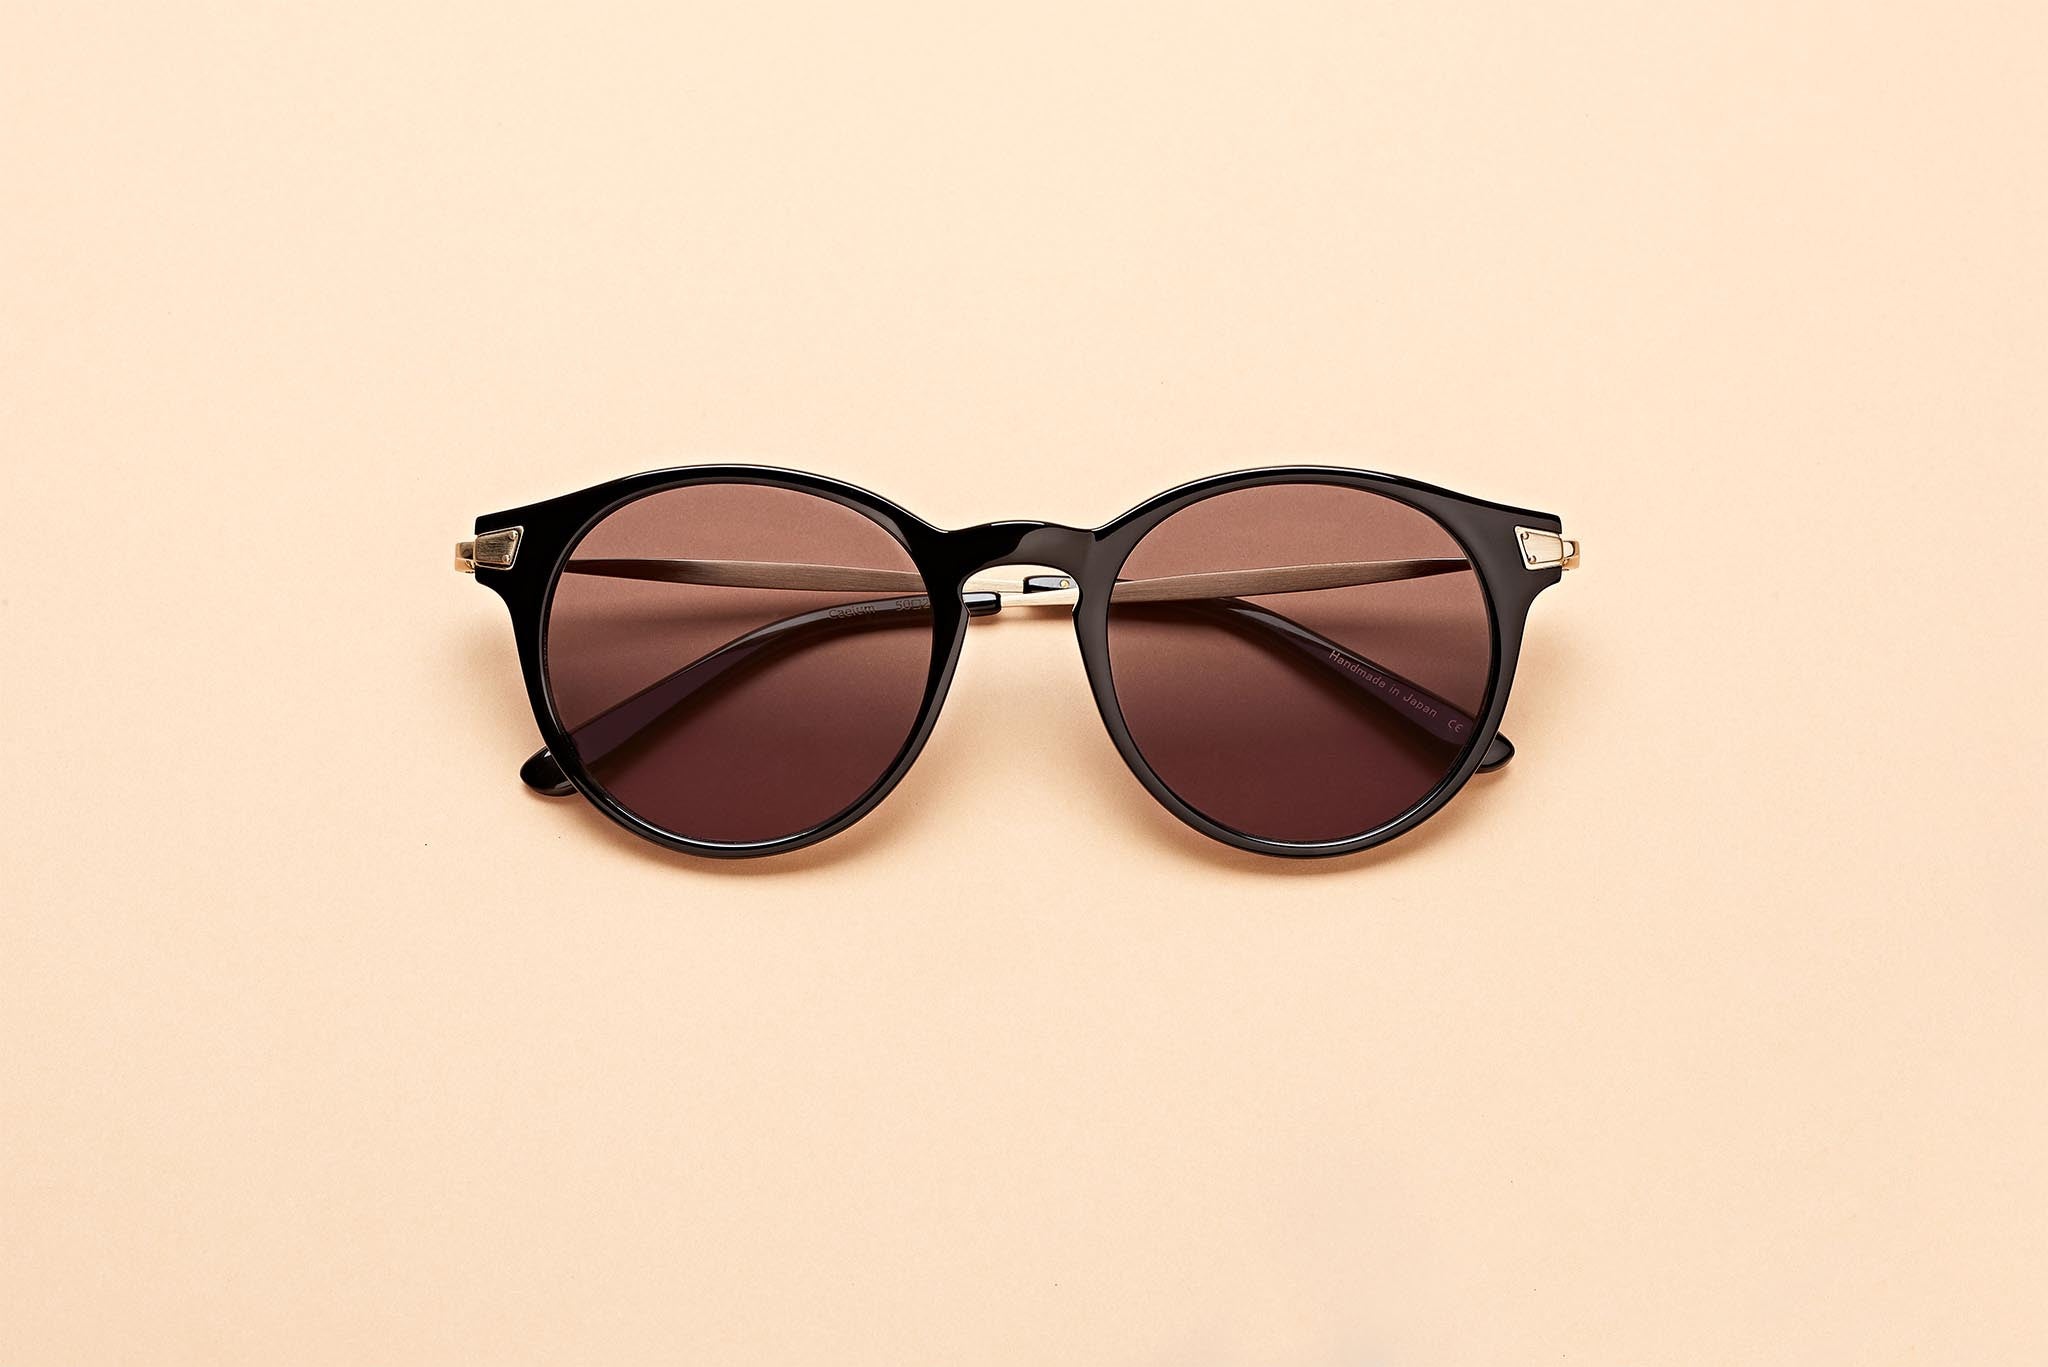 Caleum Polarised Sunglasses Australia